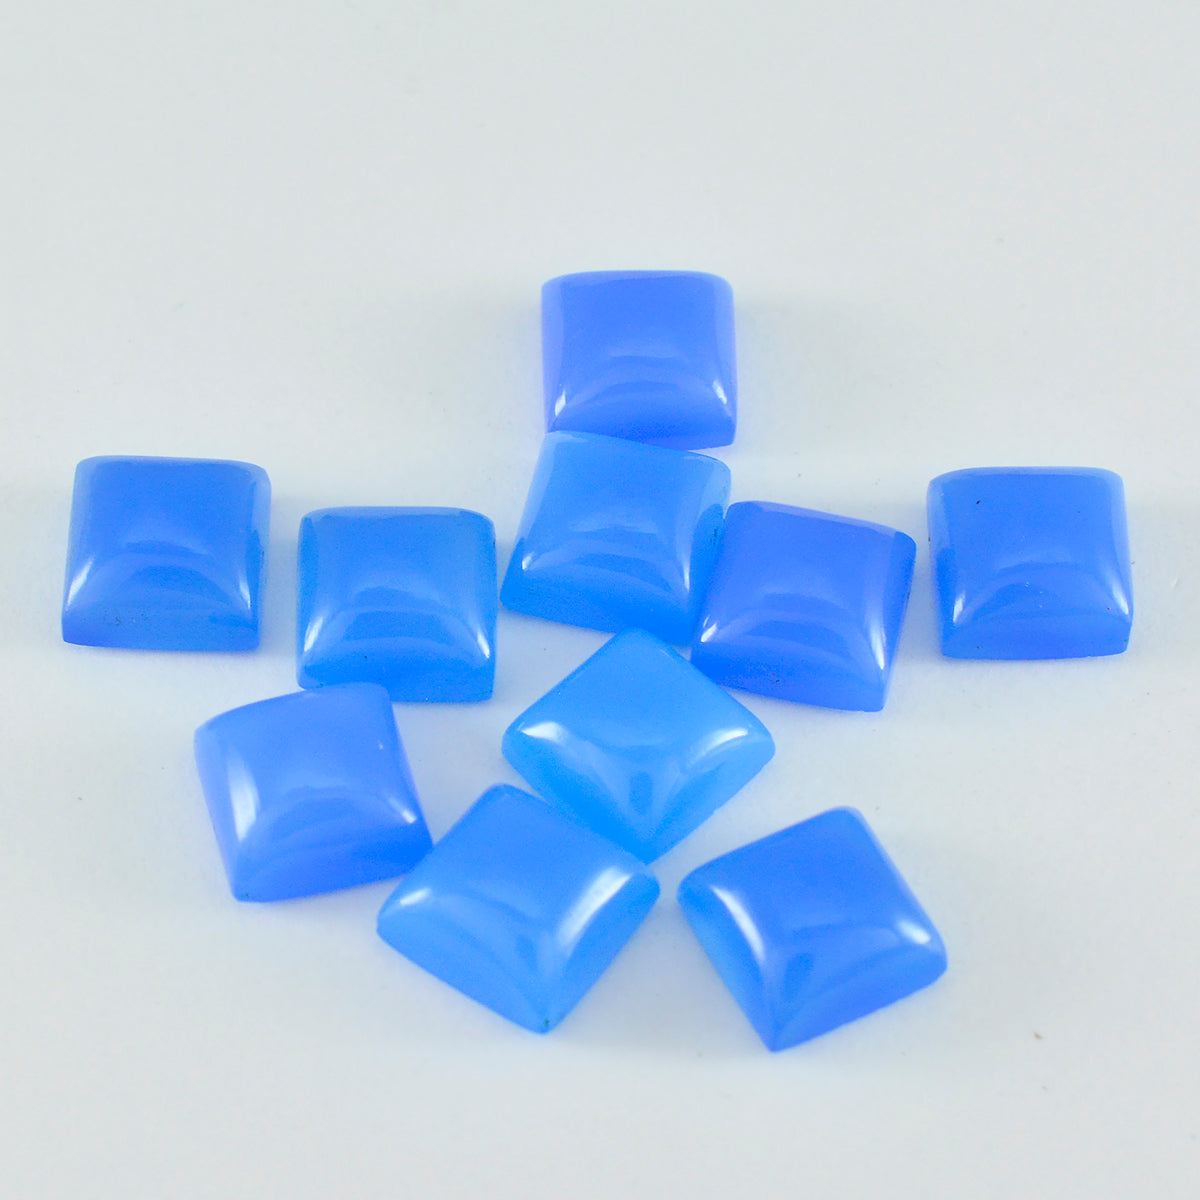 Riyogems 1 Stück blauer Chalcedon-Cabochon, 7 x 7 mm, quadratische Form, Edelsteine von ausgezeichneter Qualität